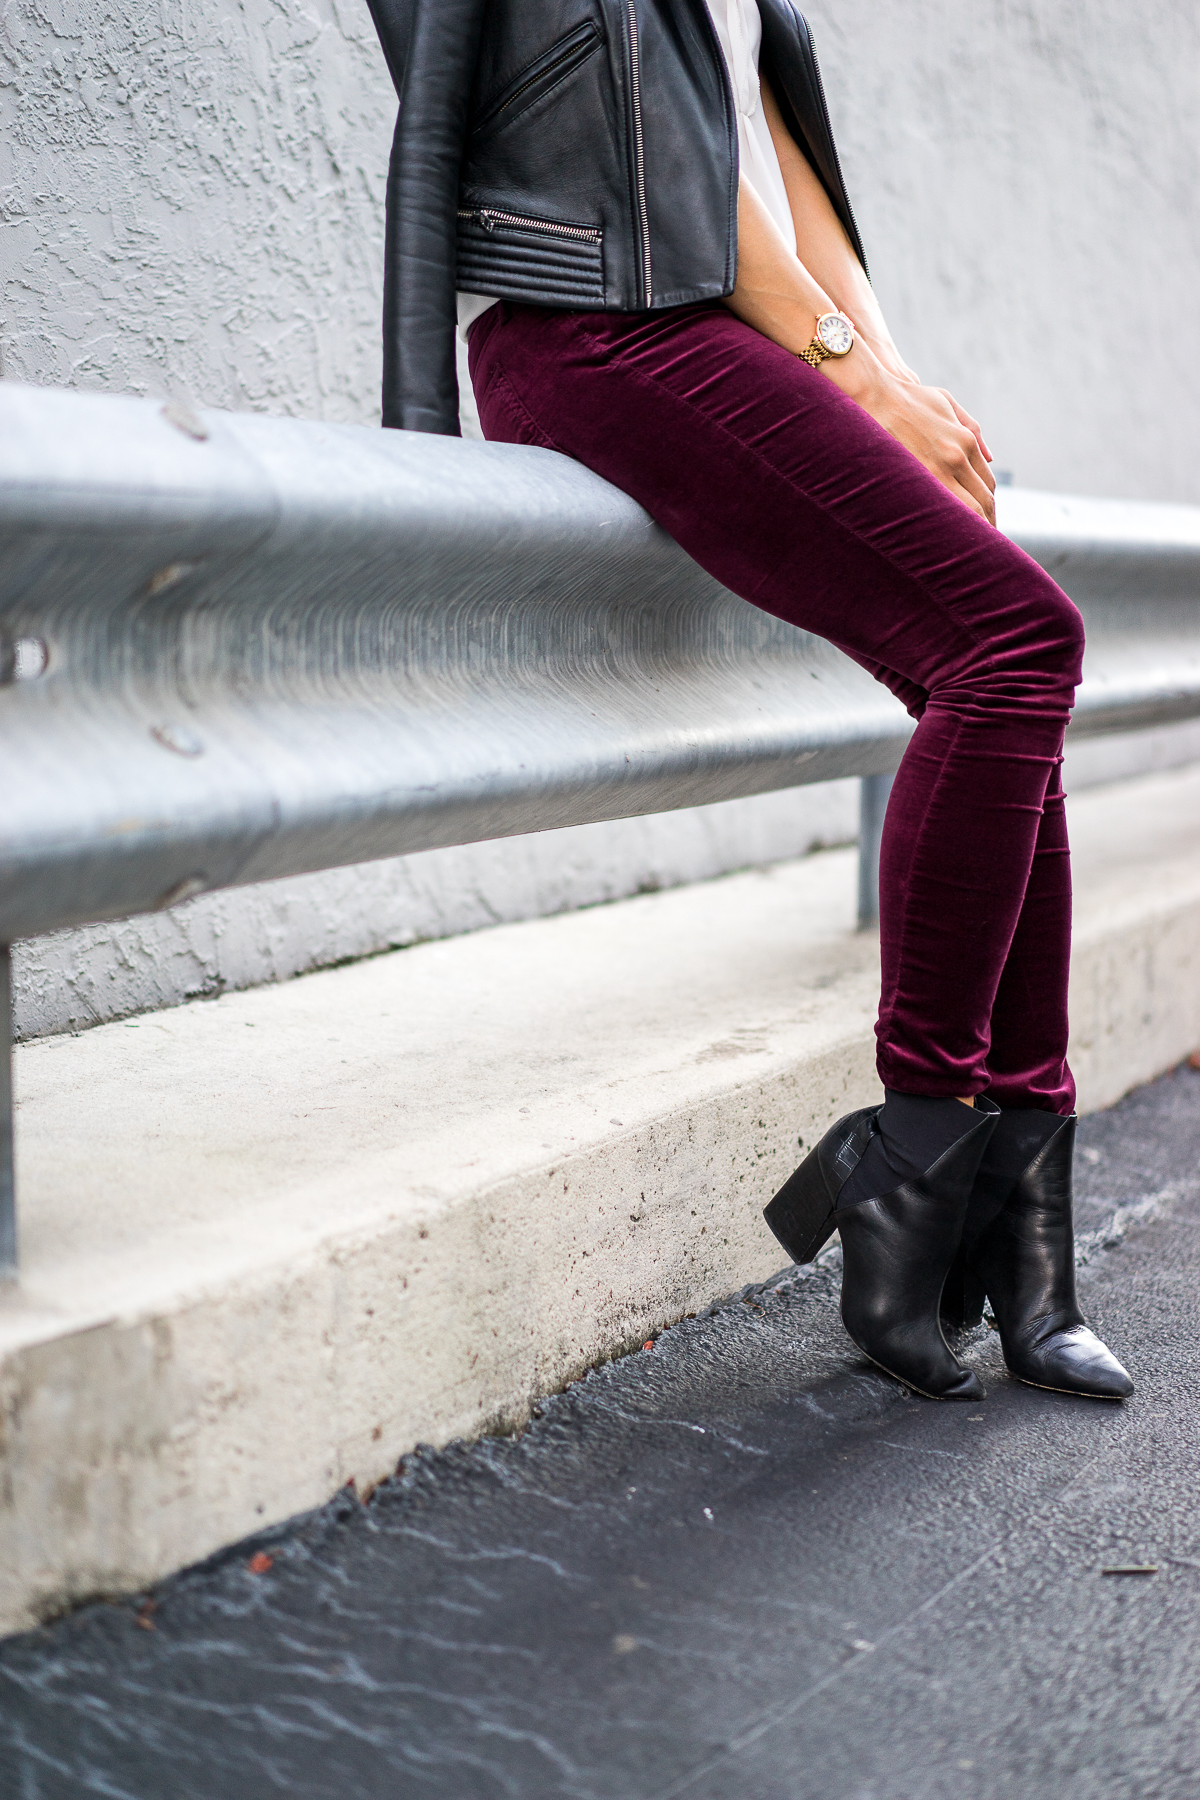 AG Velvet Legging aanbevolen door top FL fashion blogger, Een Glam Lifestyle: afbeelding van een vrouw met AG super skinny velvet legging